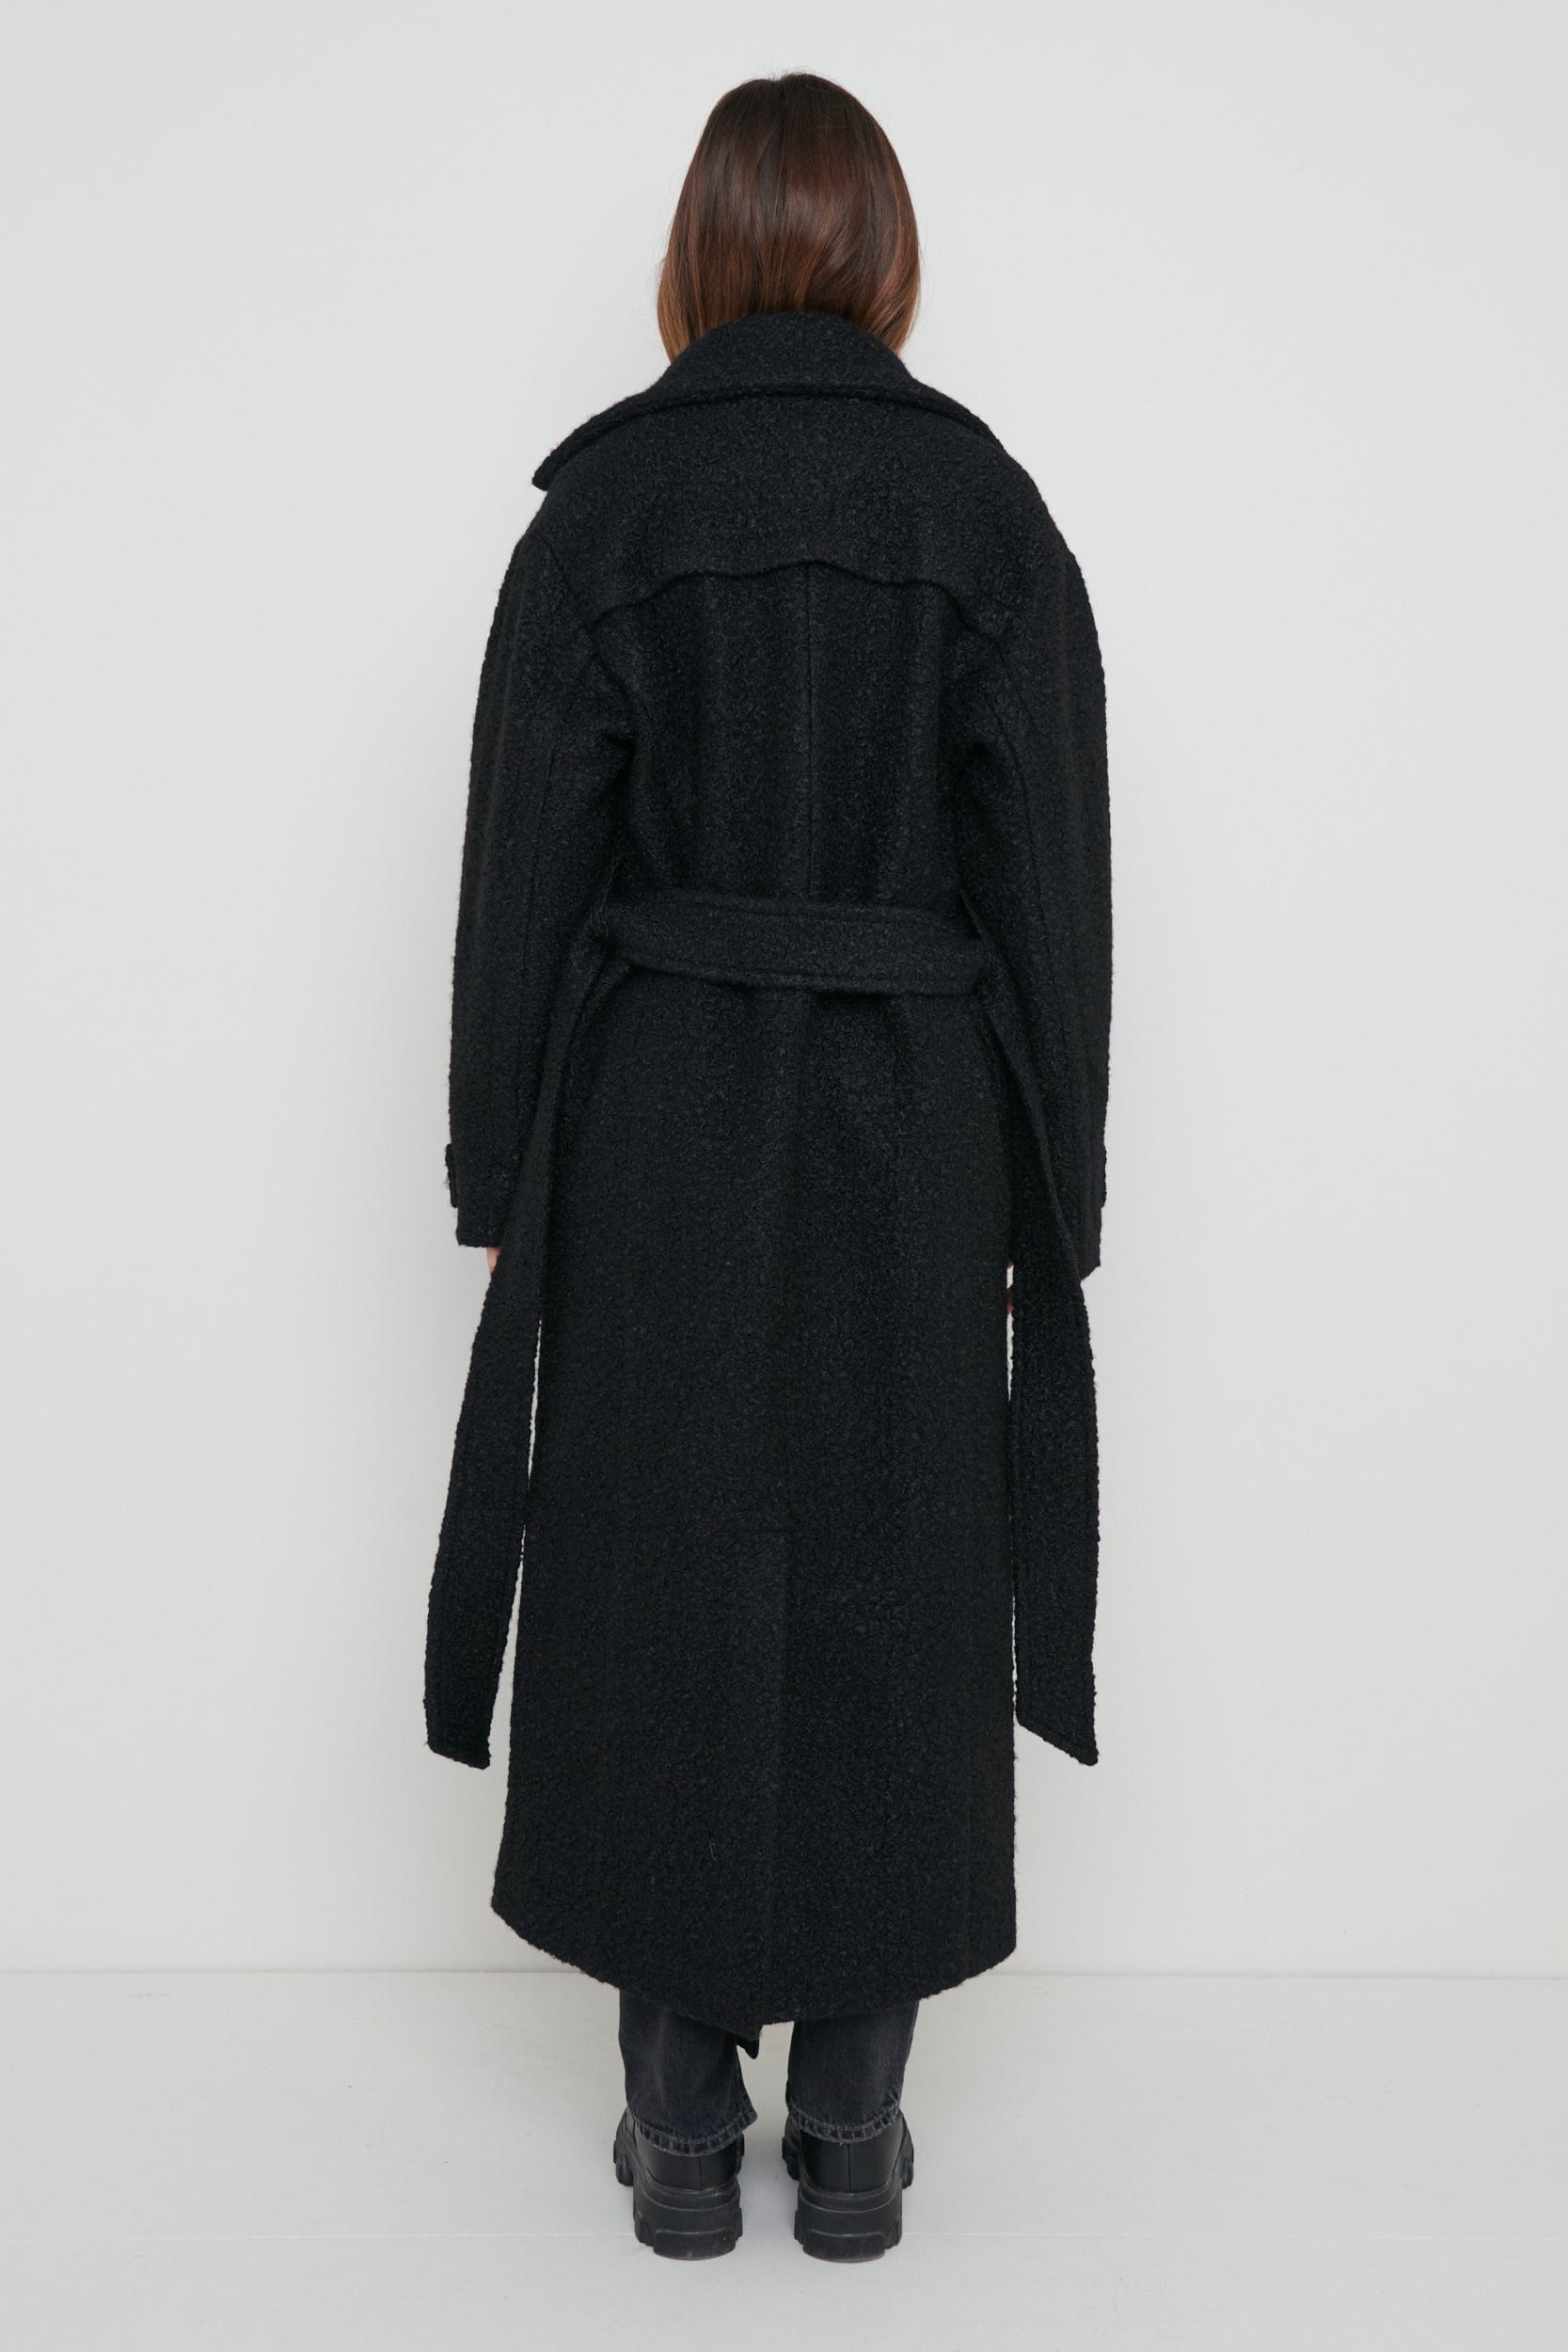 Grayson Boucle Oversized Coat - Black